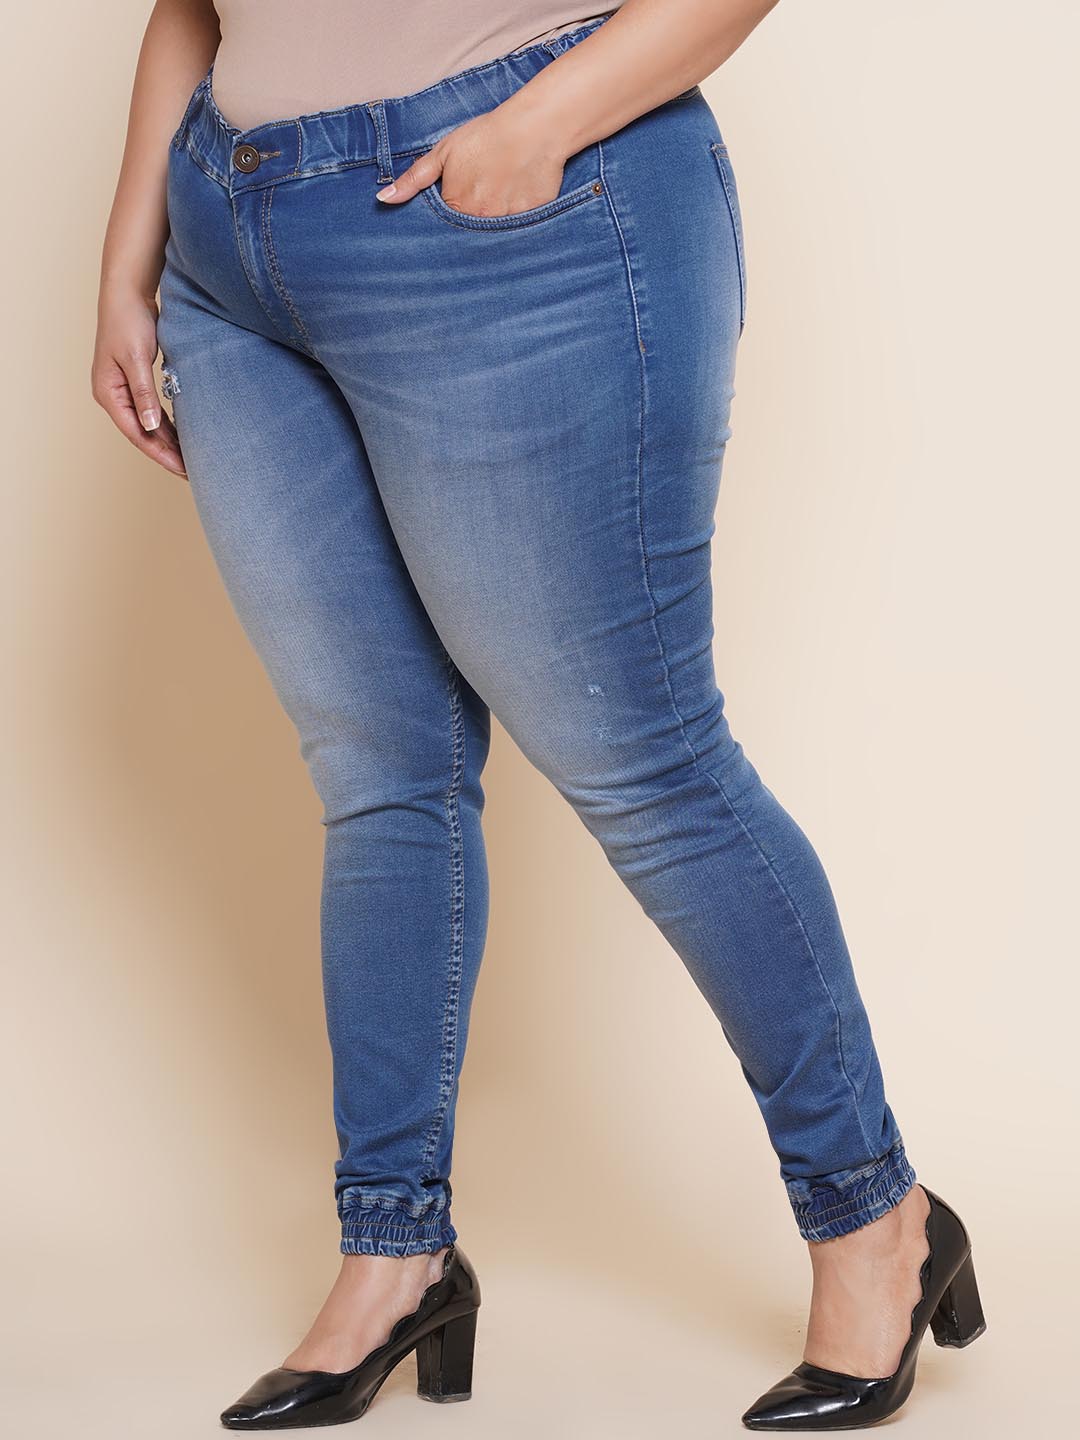 bottomwear_kiaahvi/jeans/KIJ6013/kij6013-4.jpg